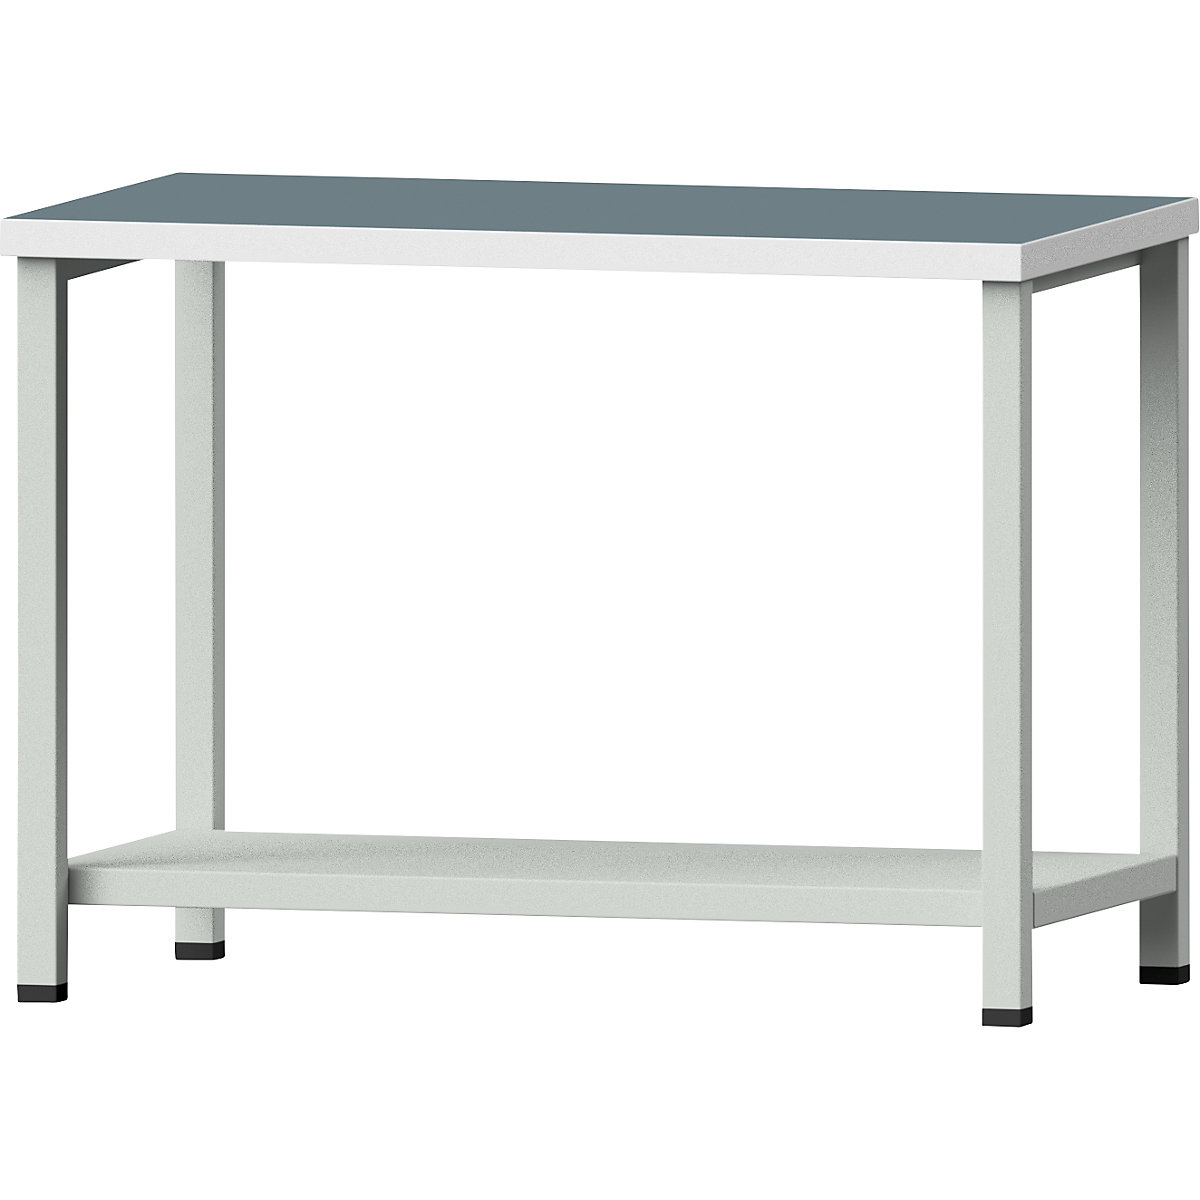 Kompaktný dielenský stôl – ANKE, šírka 1140 mm, s odkladacou policou, stacionárny, univerzálna doska-3